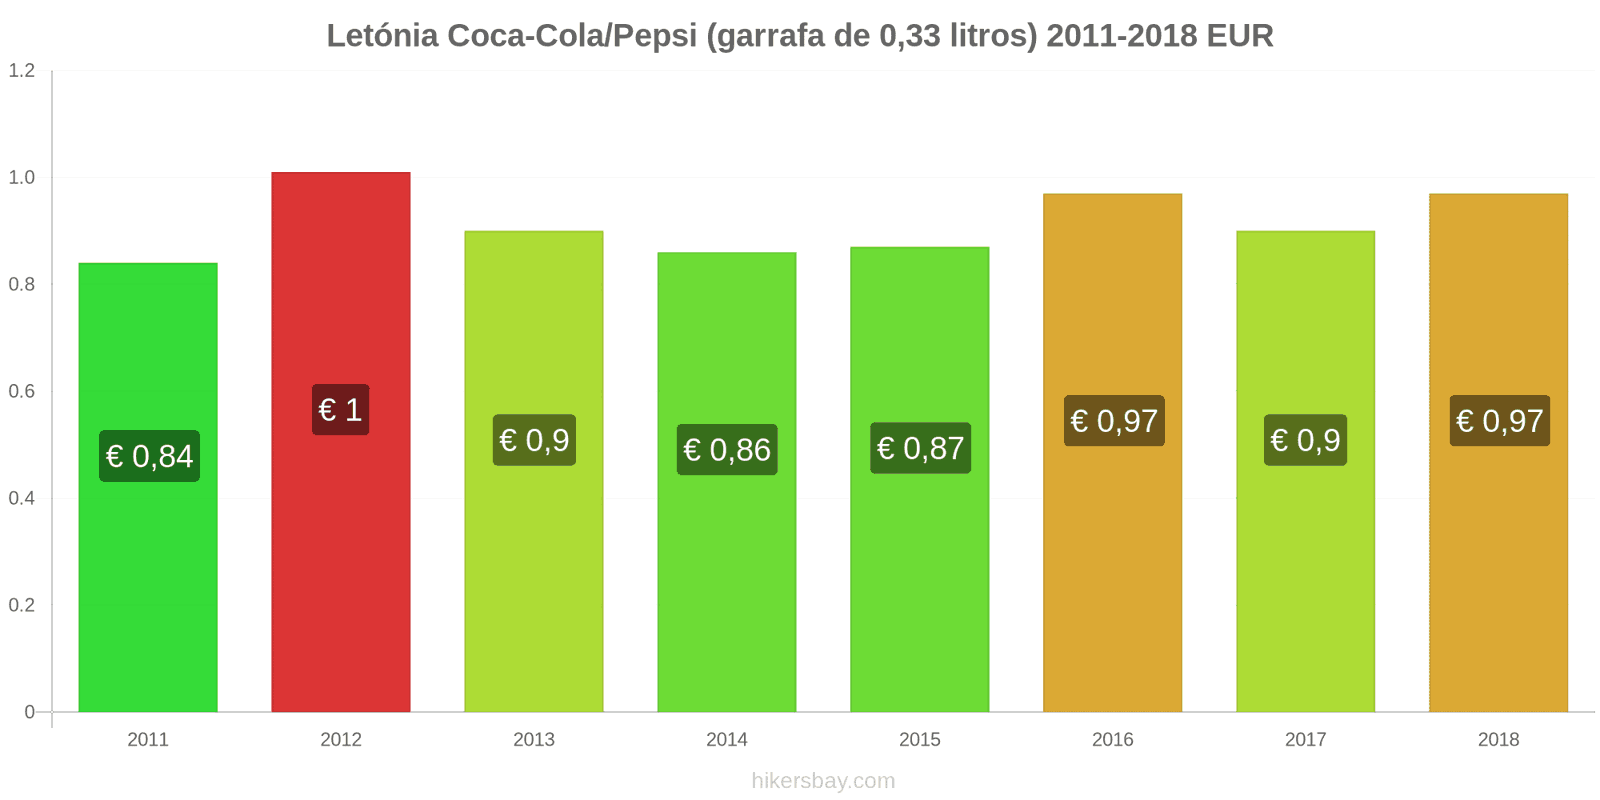 Letónia mudanças de preços Coca-Cola/Pepsi (garrafa de 0.33 litros) hikersbay.com